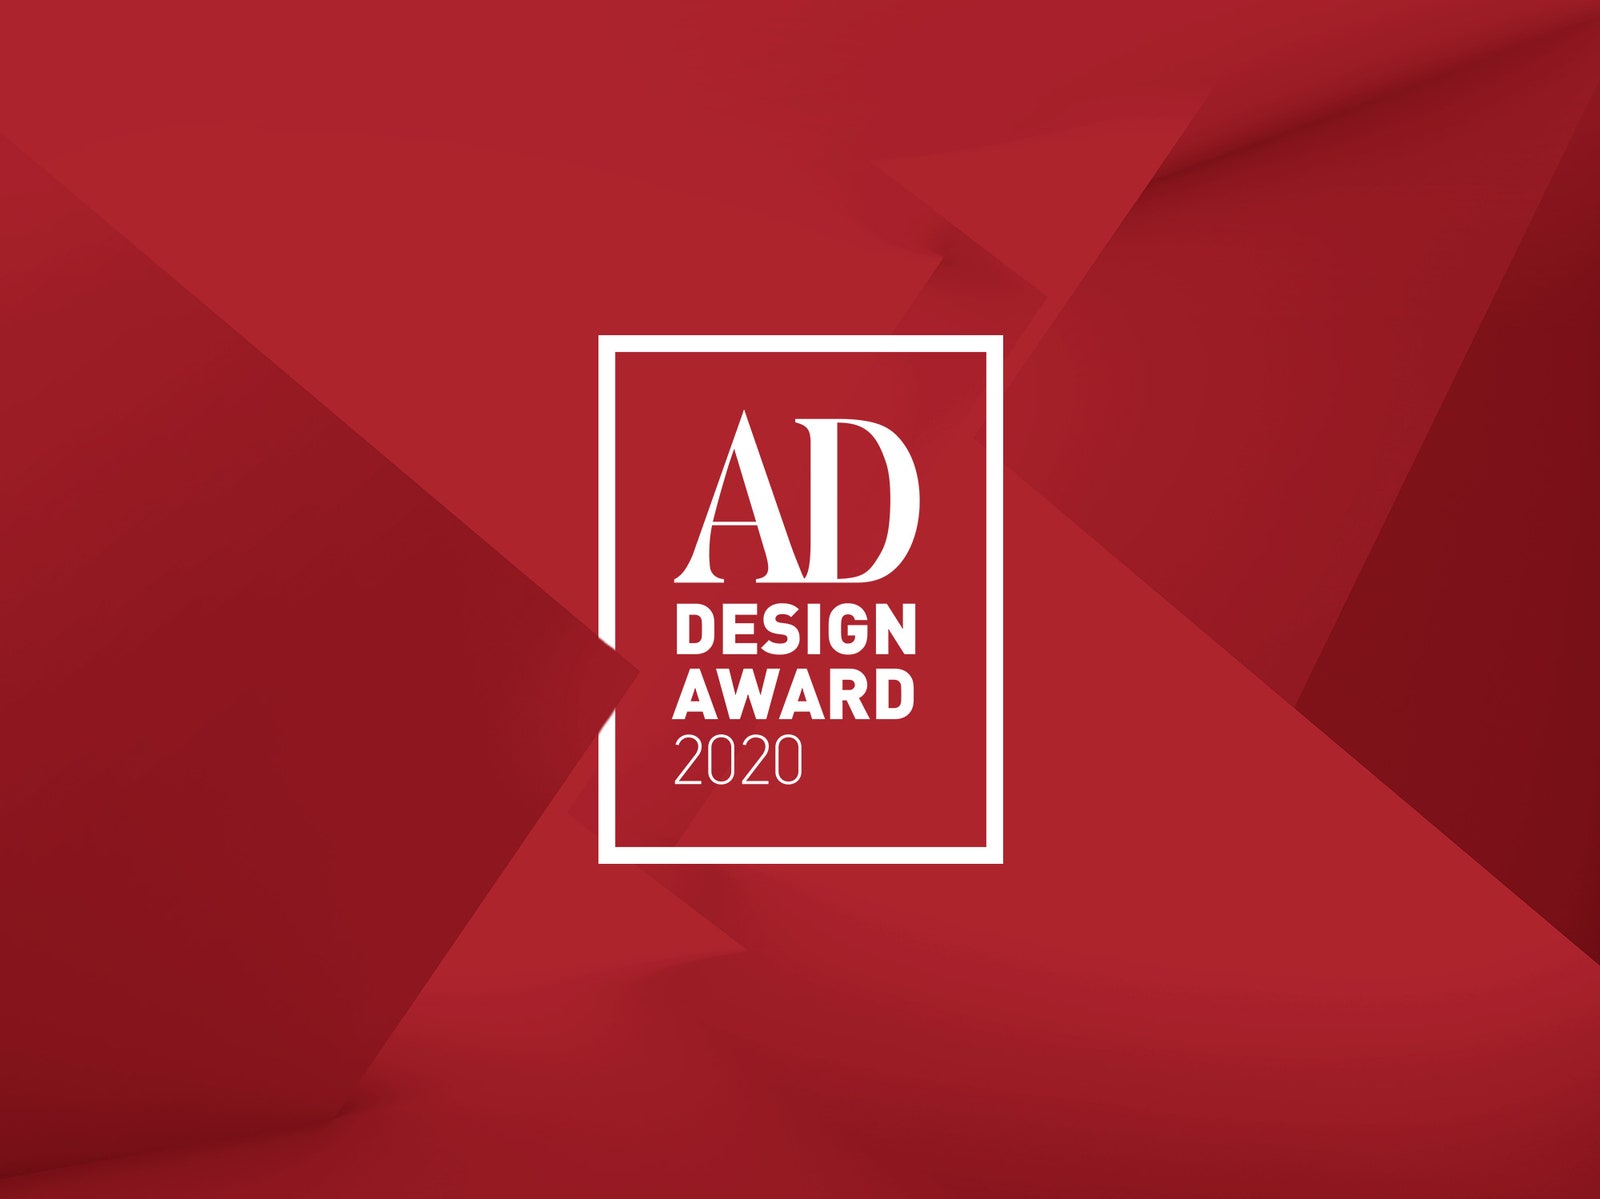 Сделай свой выбор голосование за лучшие проекты AD Design Award 2020 началось